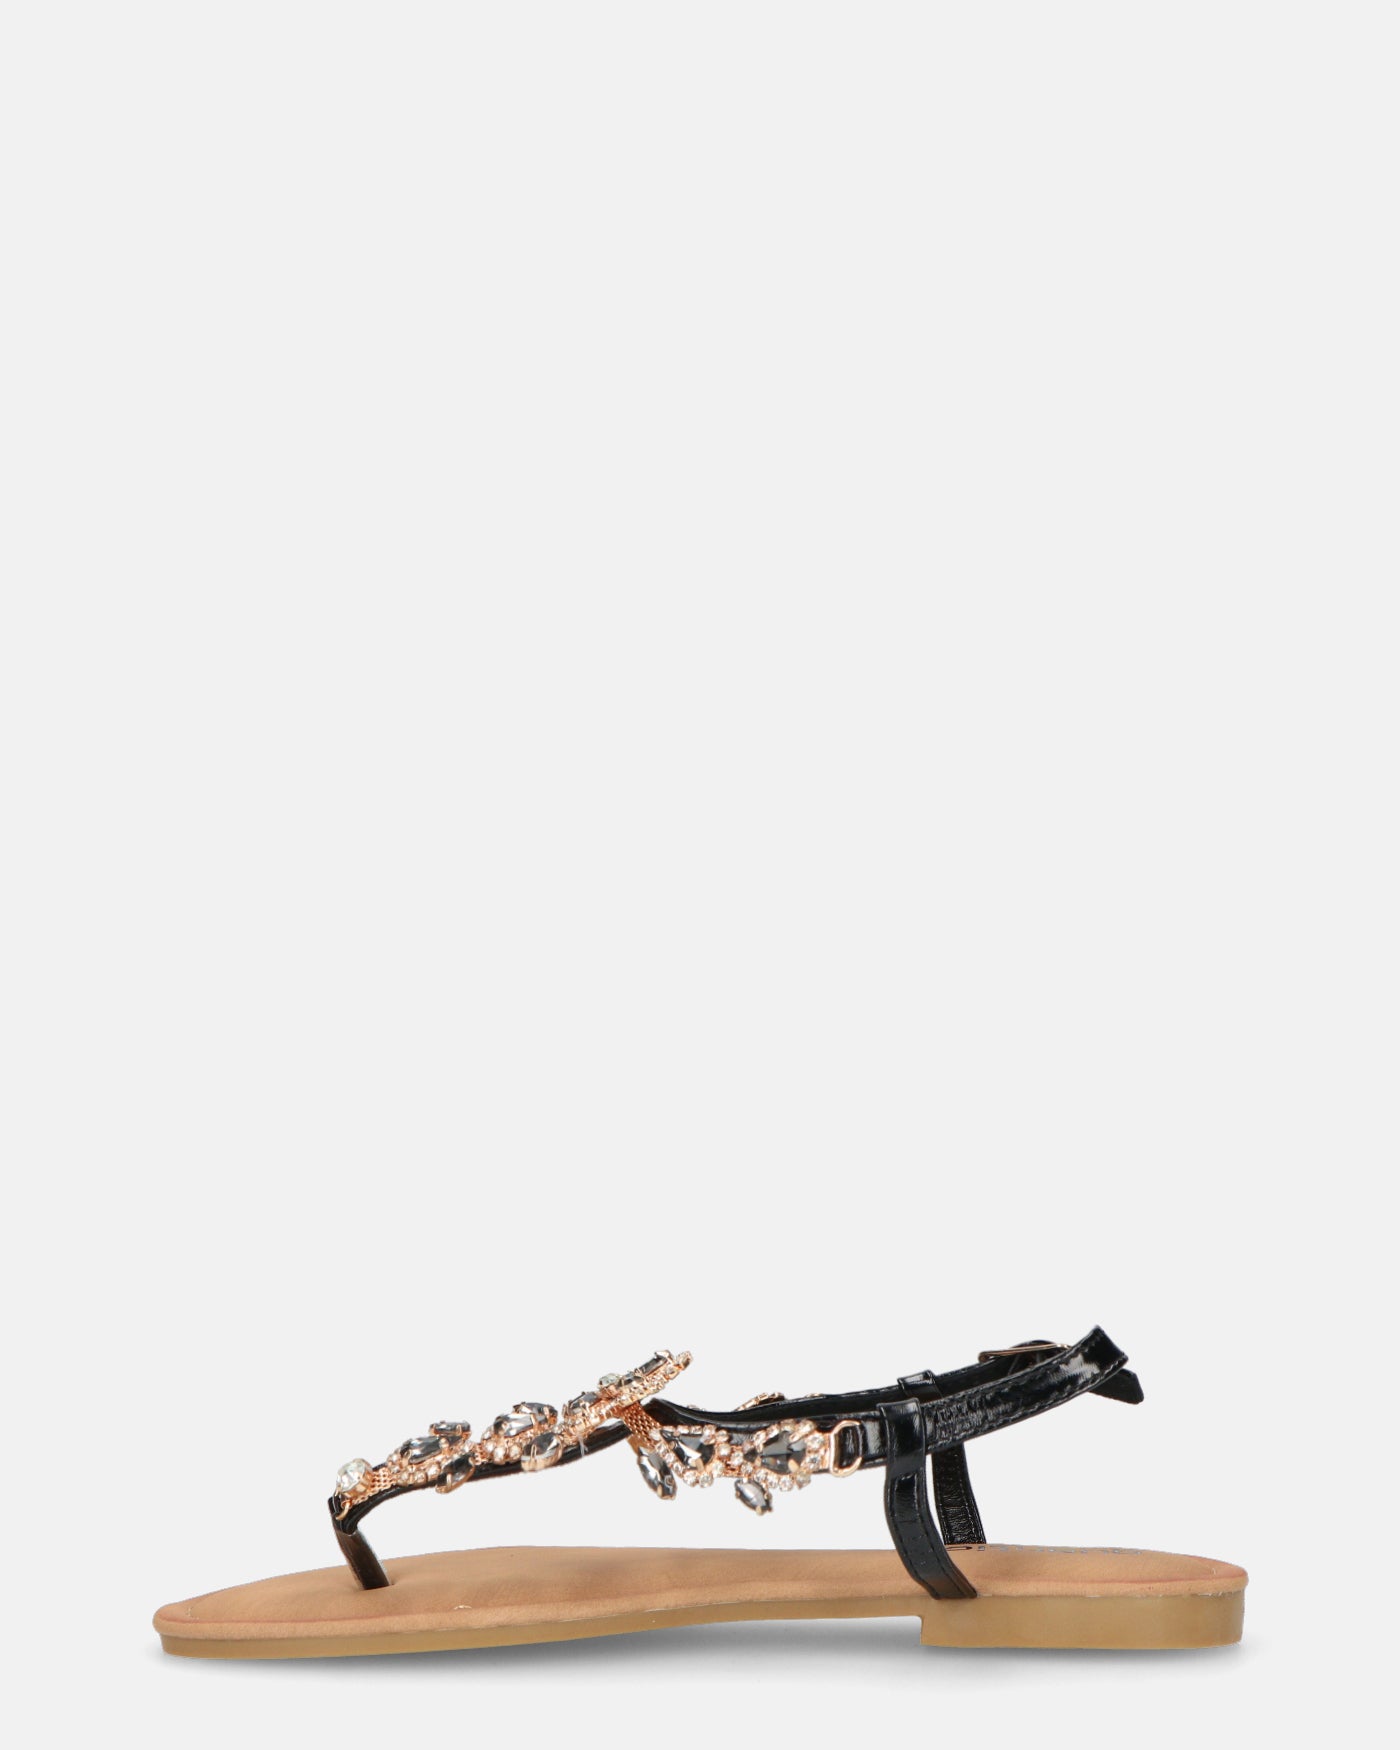 HOMA - sandalias planas con pedrería negra y bronce